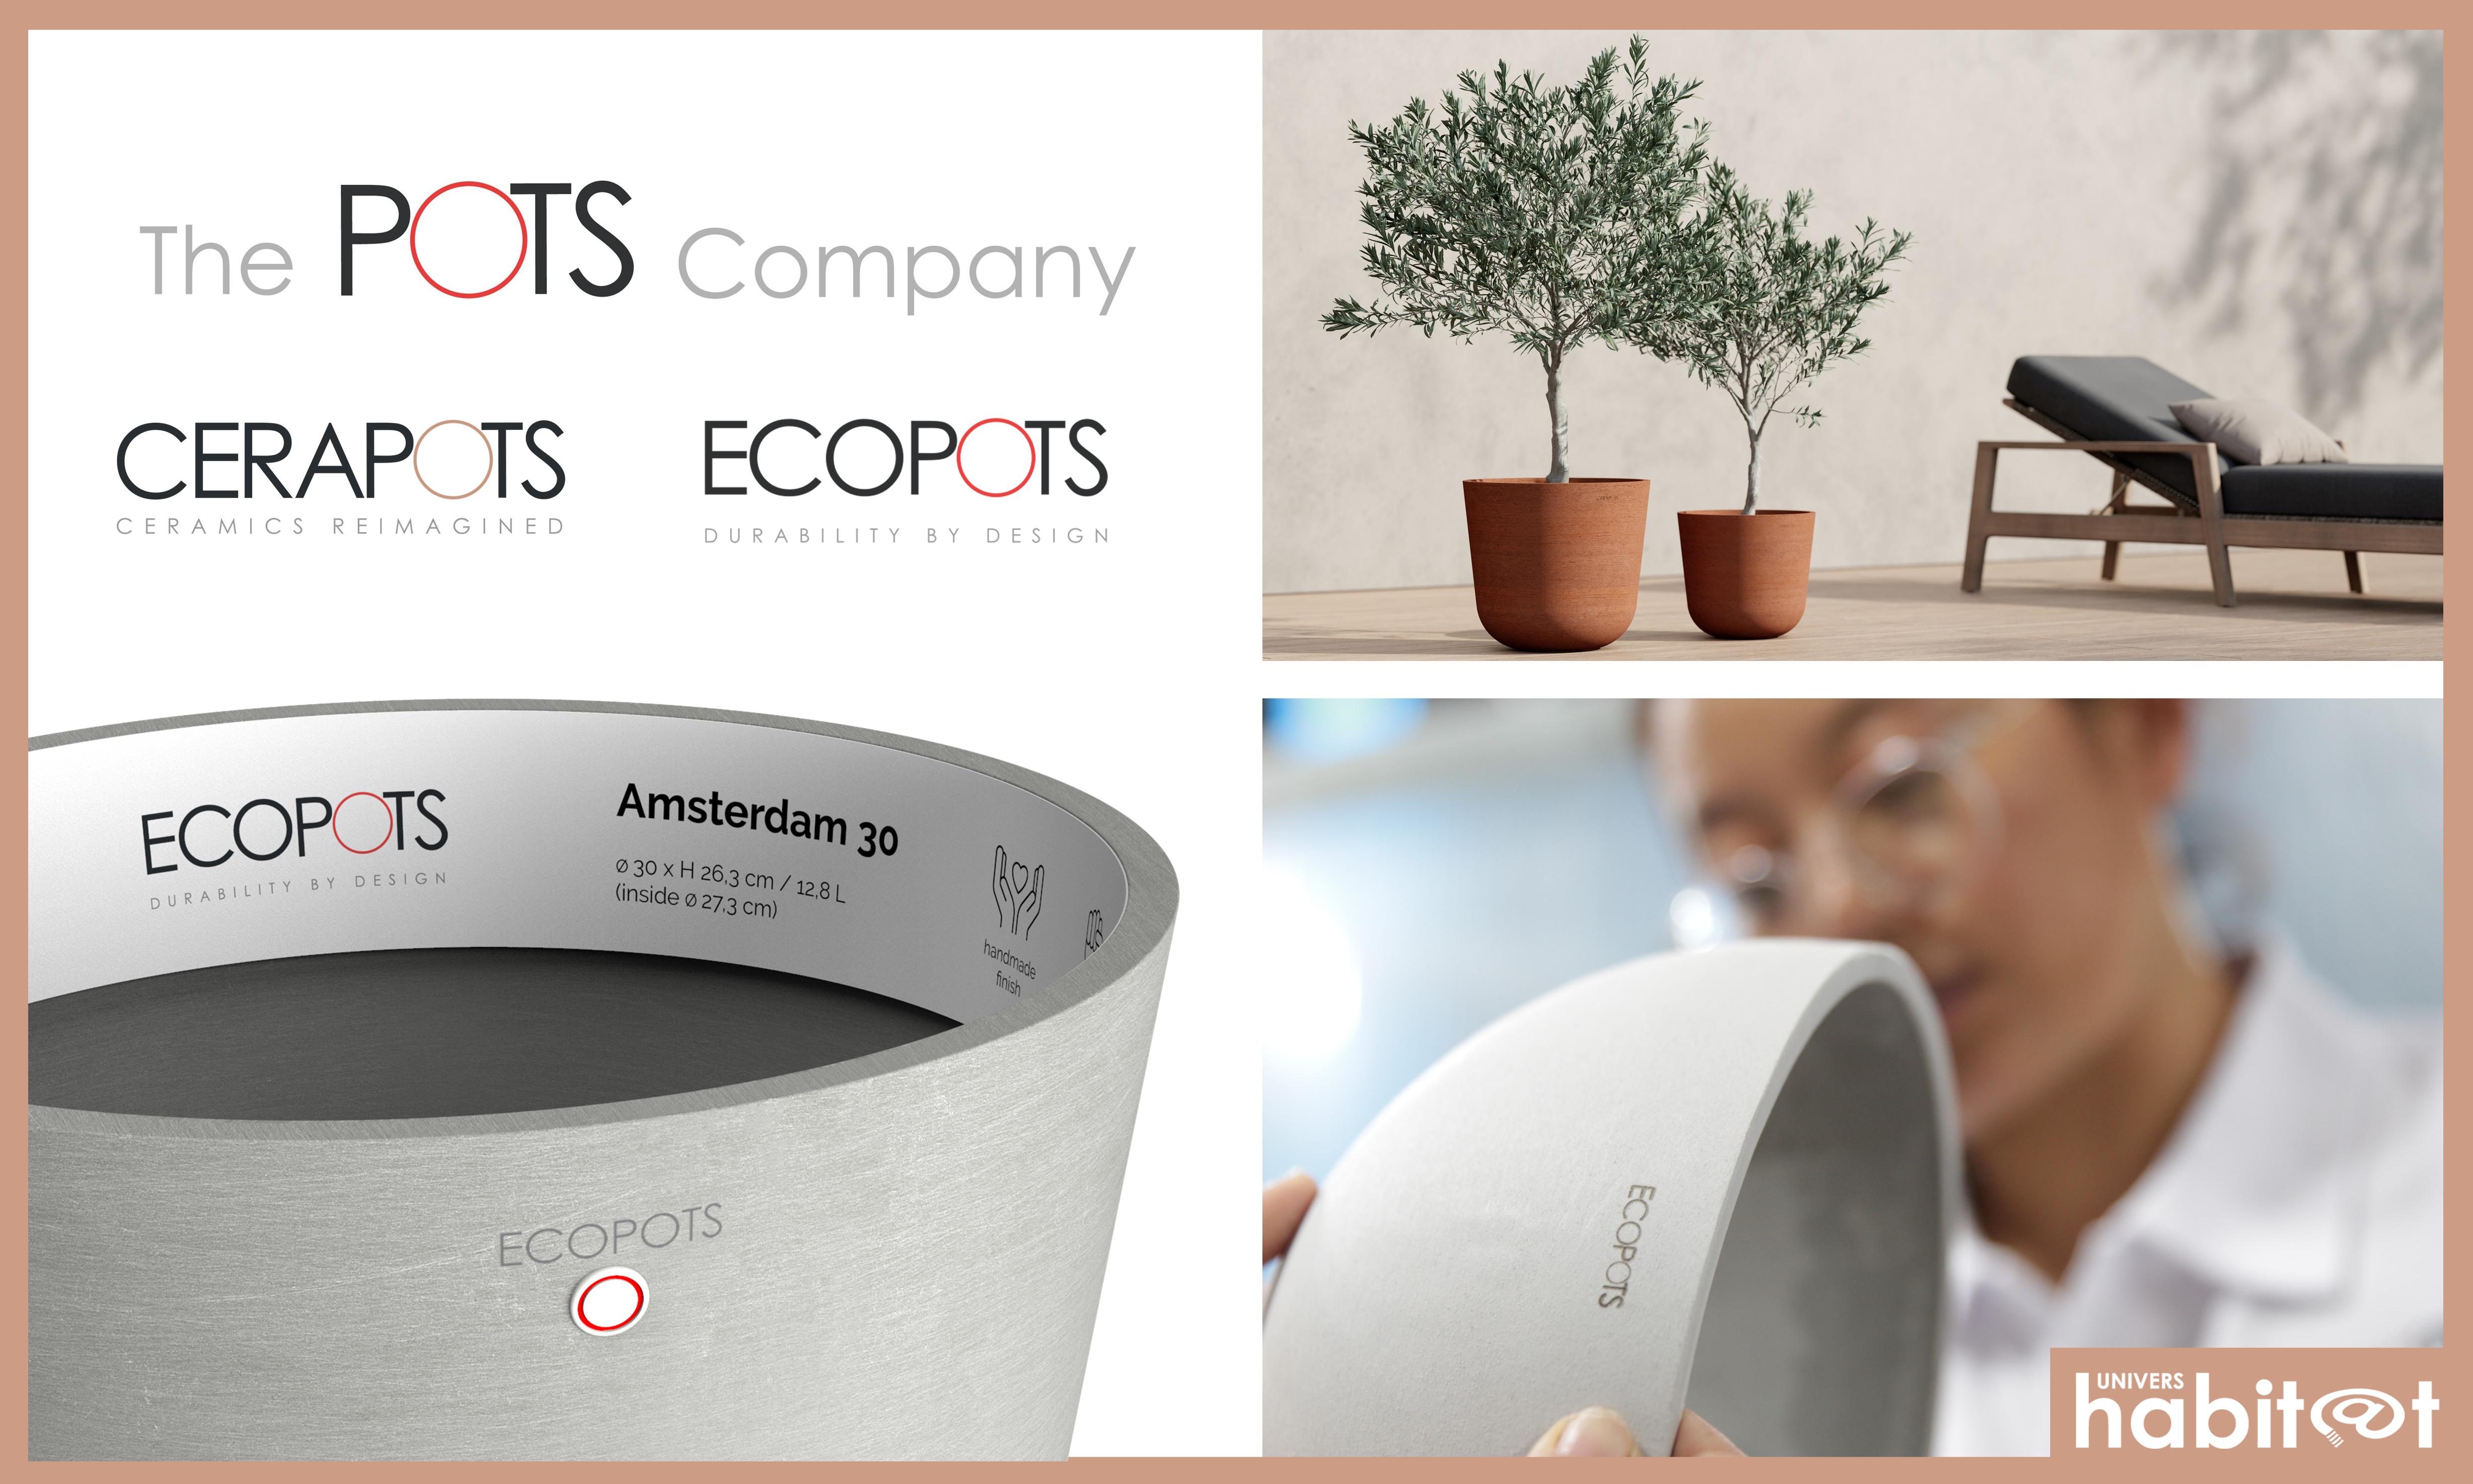 The Pots Company évolue vers plus de simplicité, transparence et durabilité